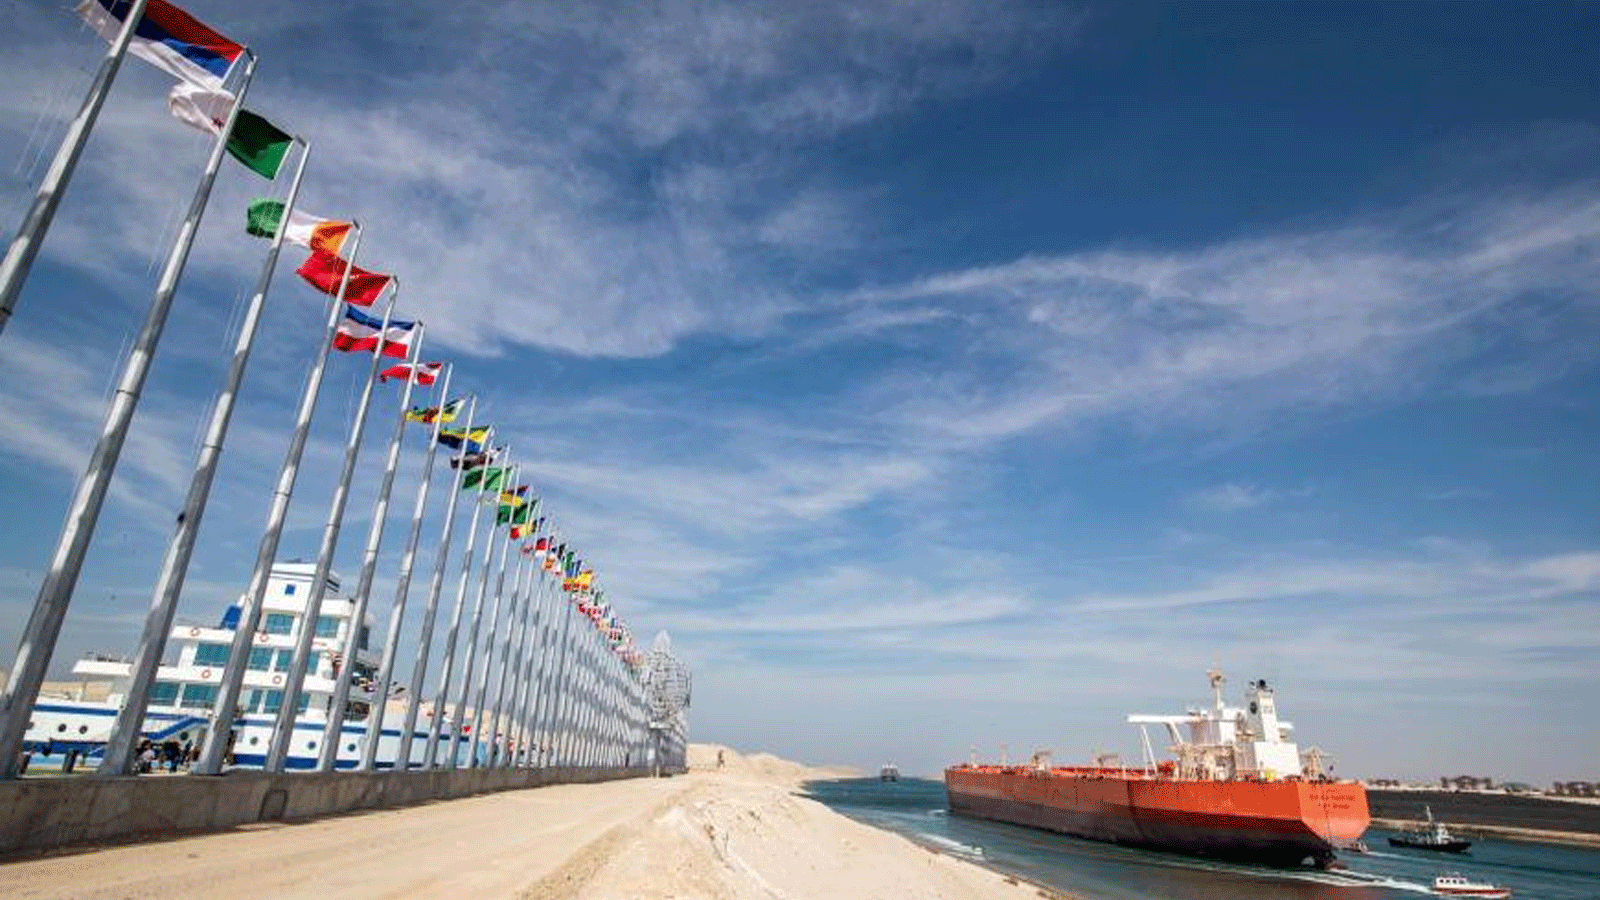 صورةالتُقطت في 17 نوفمبر 2019 لناقلة النفط التي ترفع العلم الماليزي بونجا كاستوري وهي تُبحر عبر قناة السويس في مدينة الإسماعيلية المركزية للقناة في الذكرى الـ 150 لافتتاح القناة.